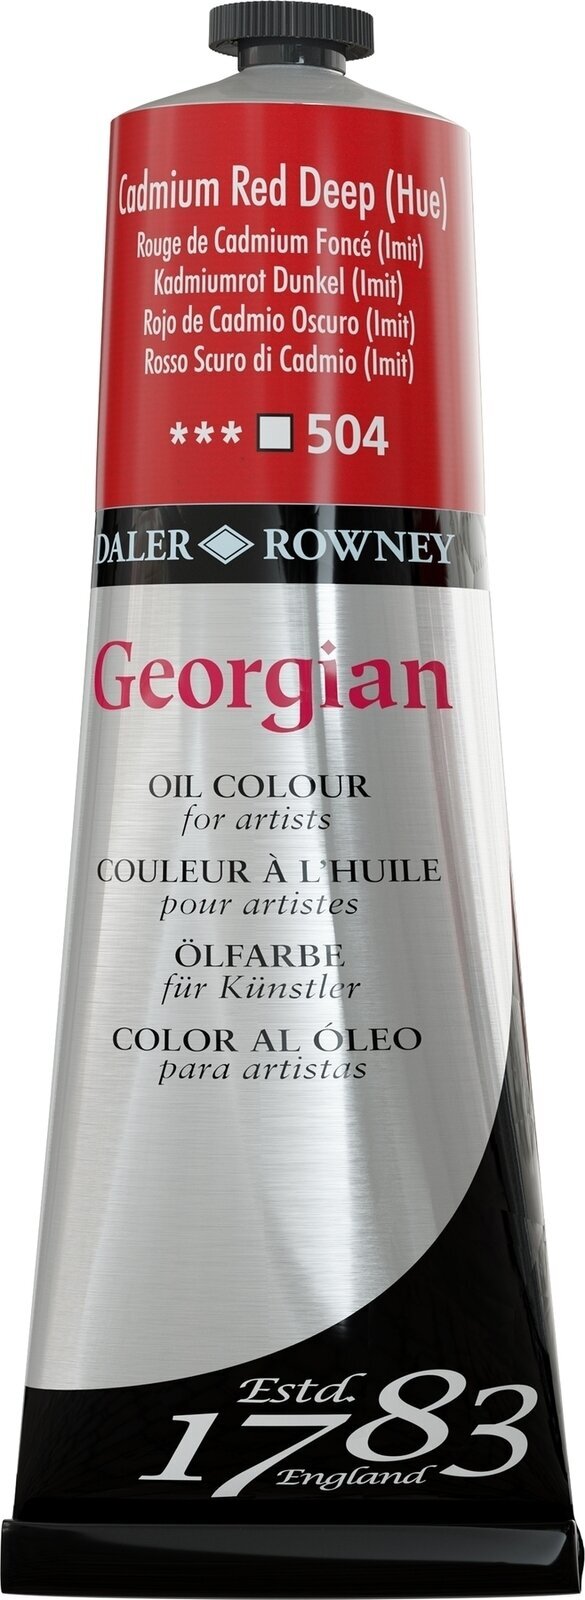 Χρώμα λαδιού Daler Rowney Georgian Λαδομπογιά Cadmium Red Deep Hue 225 ml 1 τεμ.